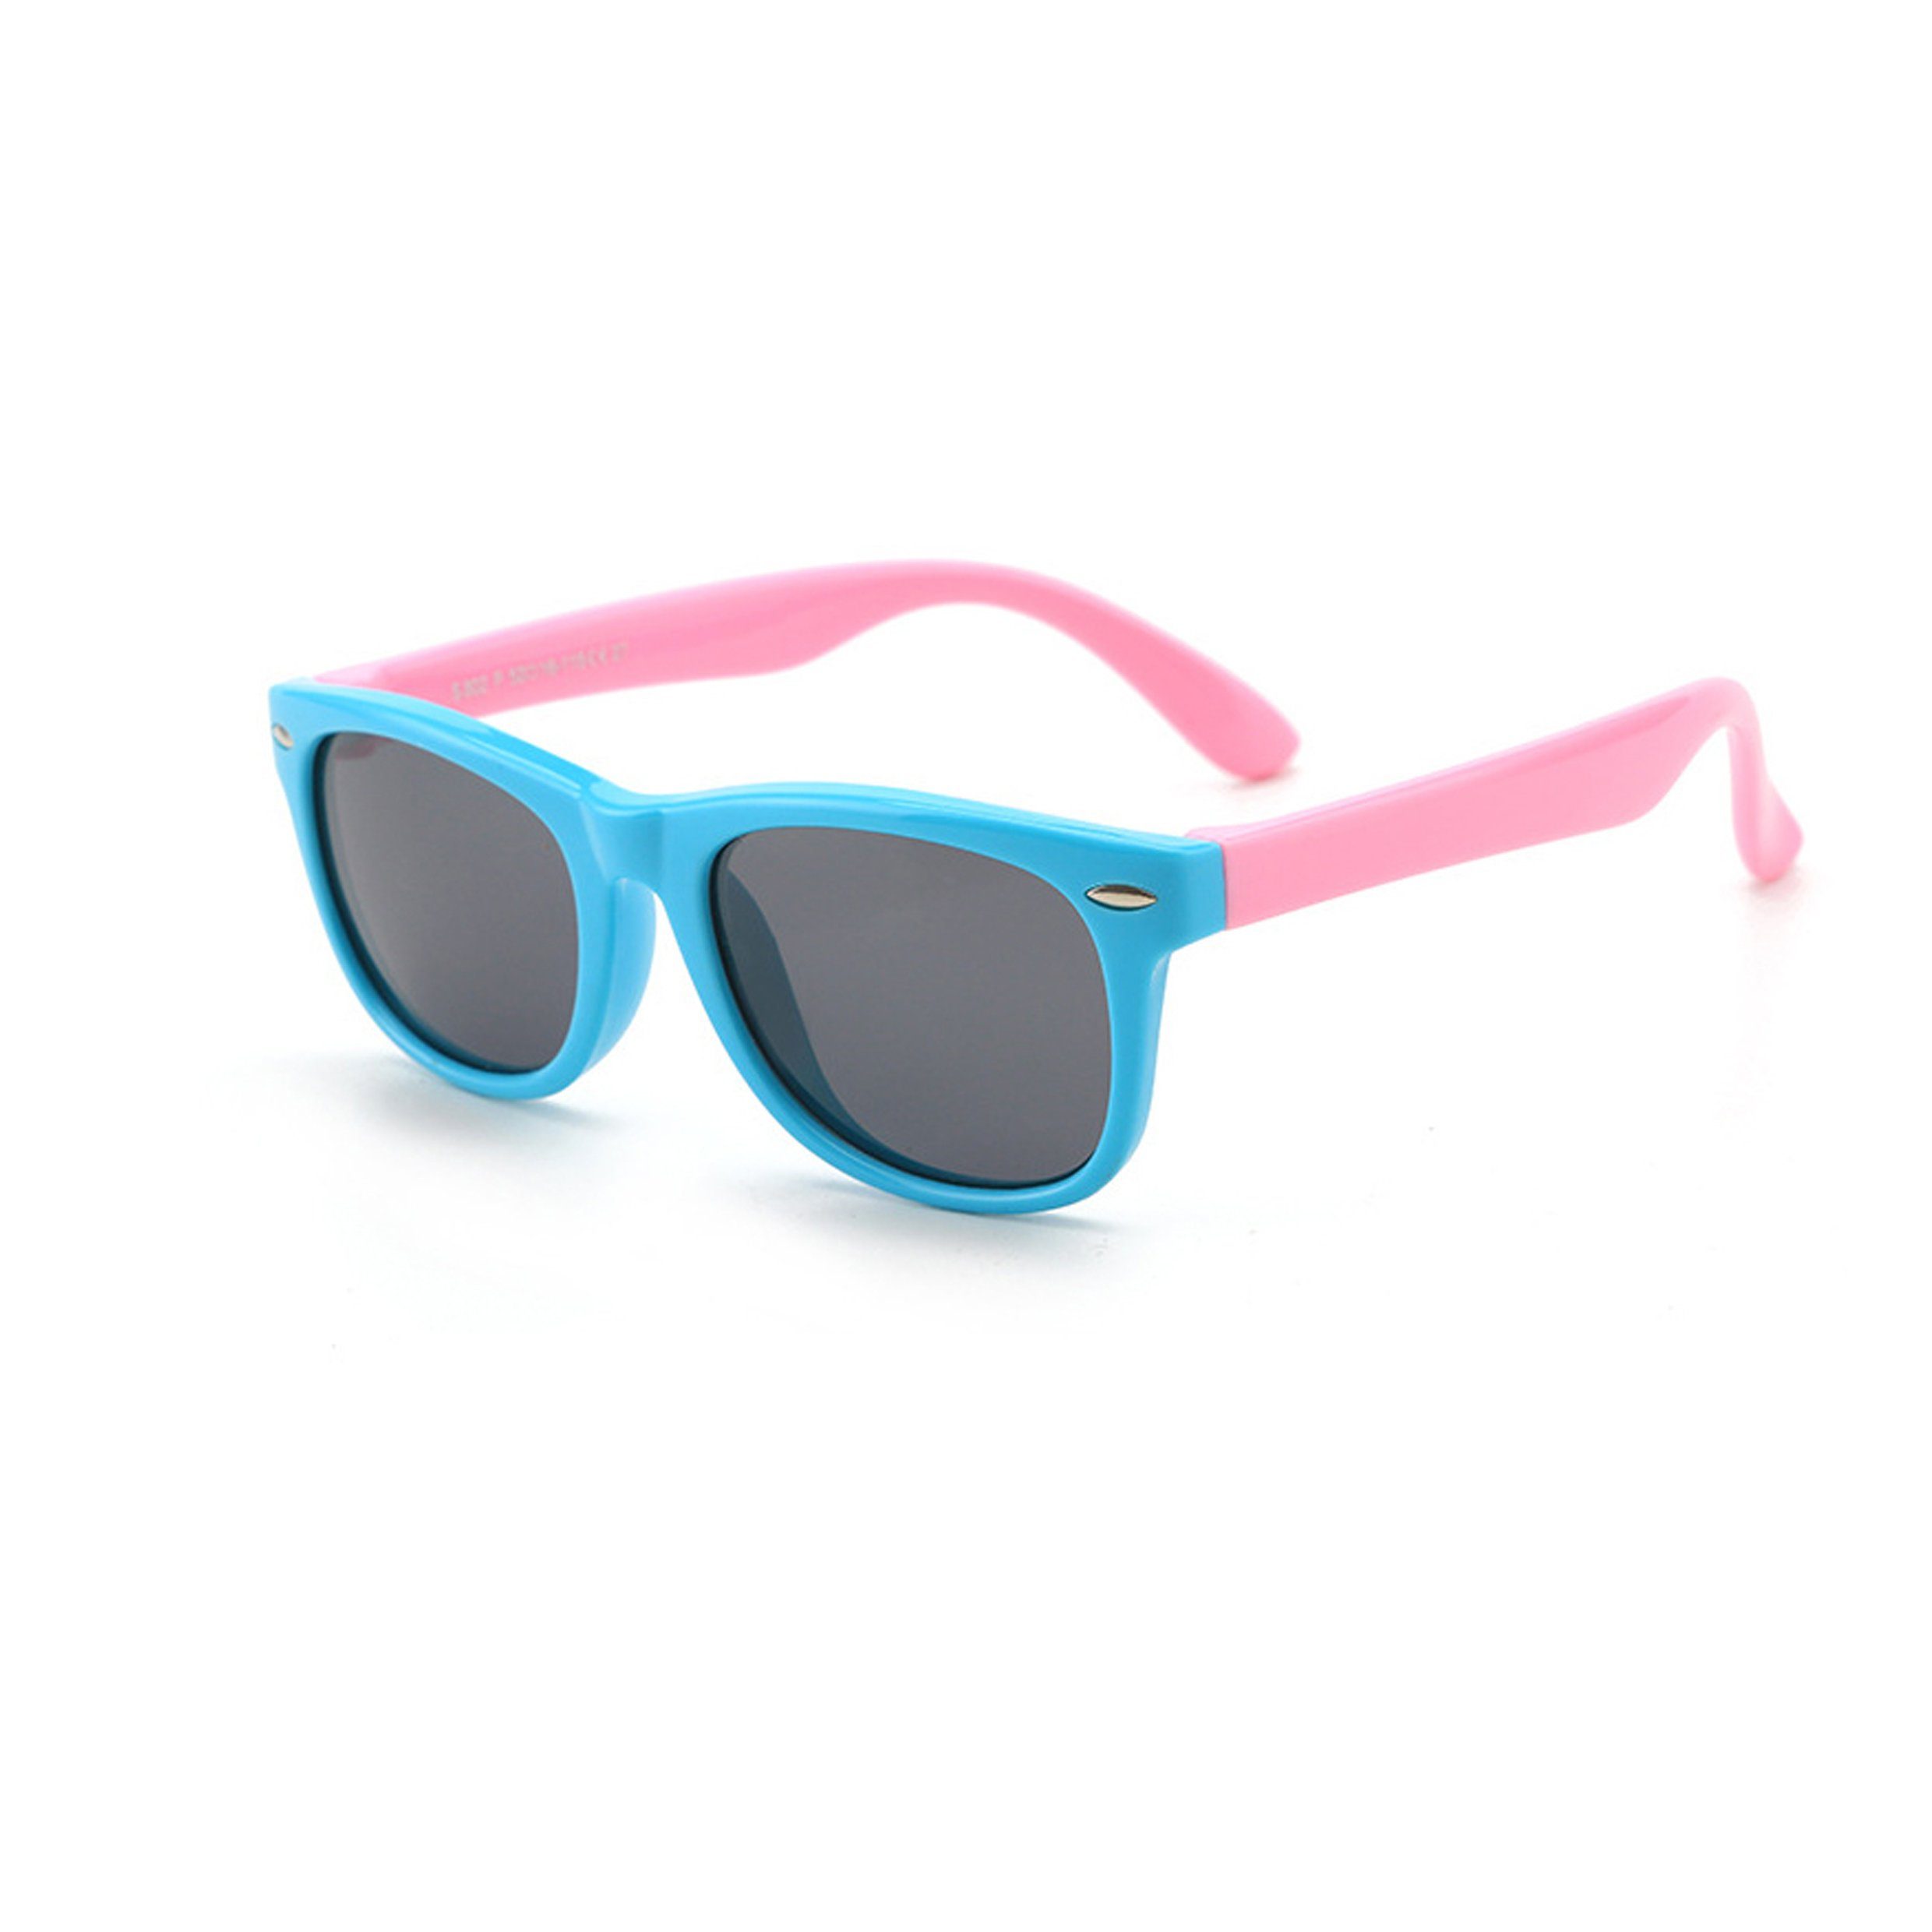 Olotos Sonnenbrille Sonnenbrille für Kinder Mädchen Jungen Gummi 100% UV400 Schutz Brille Hellblau-Rosa